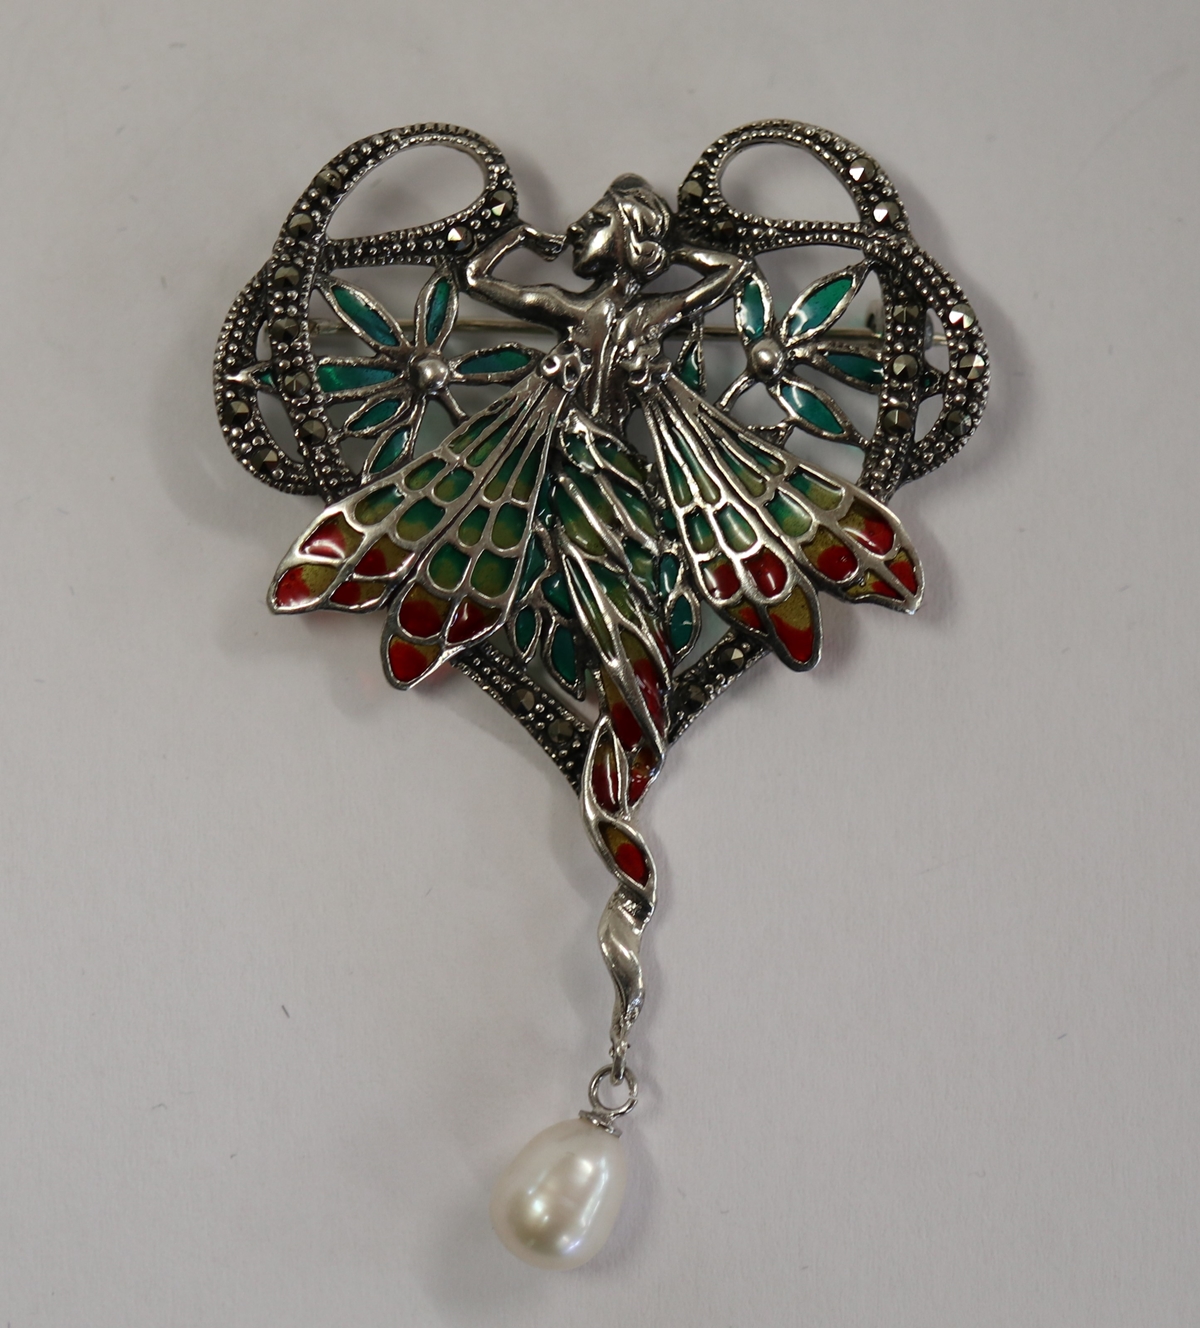 Silver & champlevé enamel Art Nouveau style pendant brooch